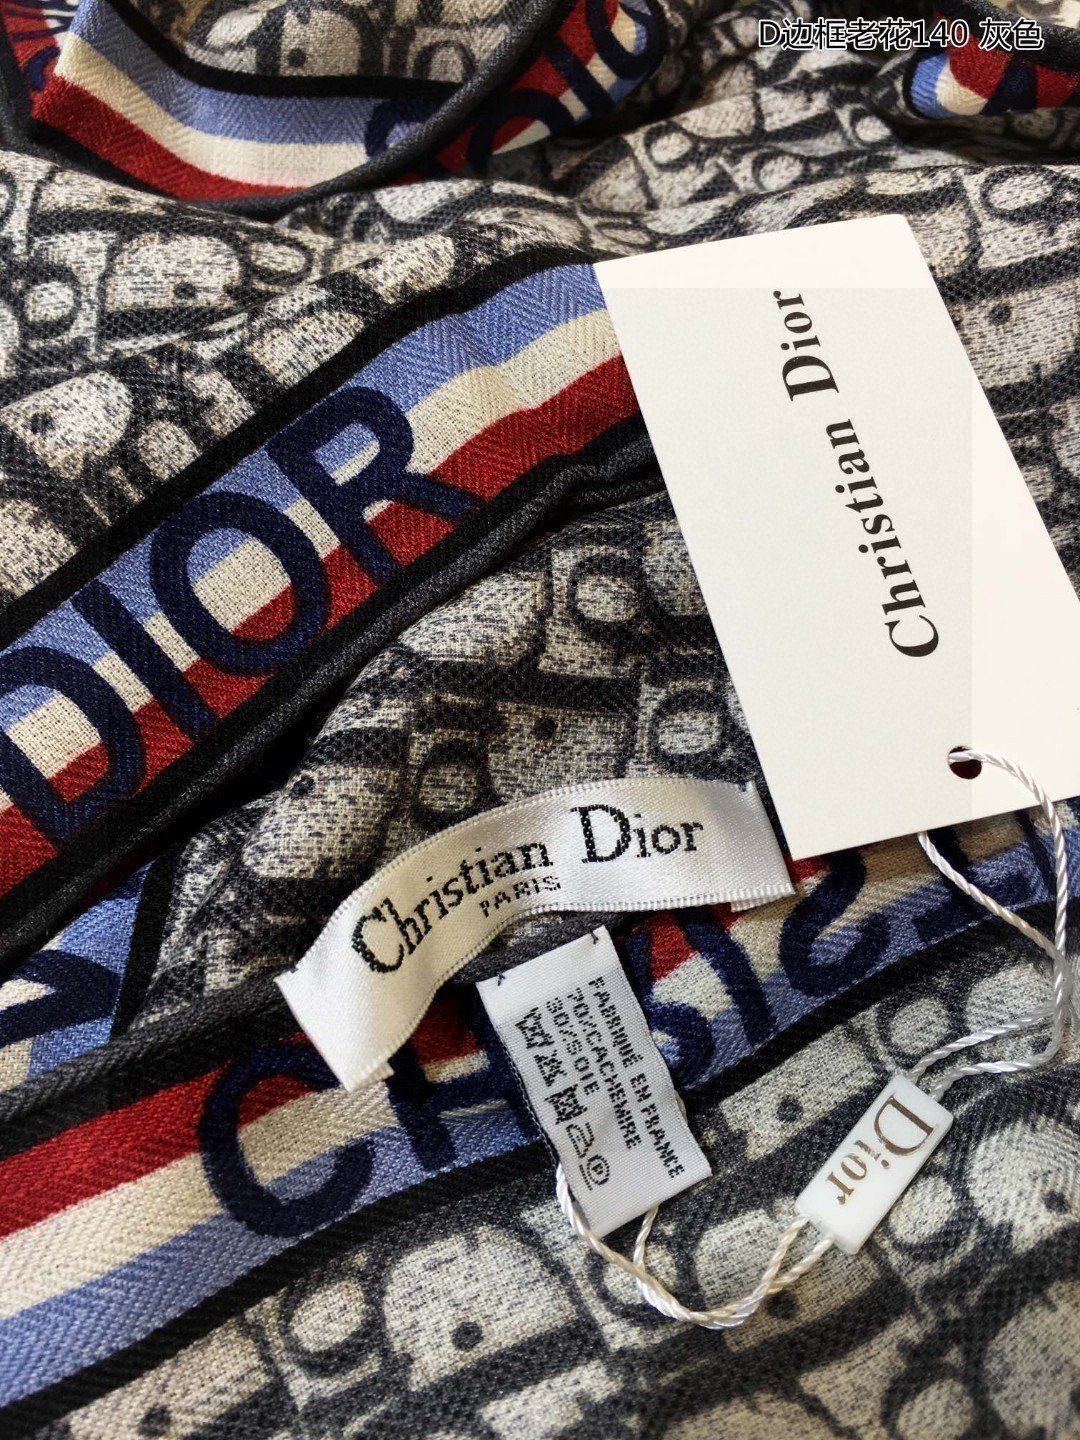 新Dior最最新的专柜主打款D边框老花140度假及日常都非常好搭配的款订单私流一看到就想去度假️平时穿搭